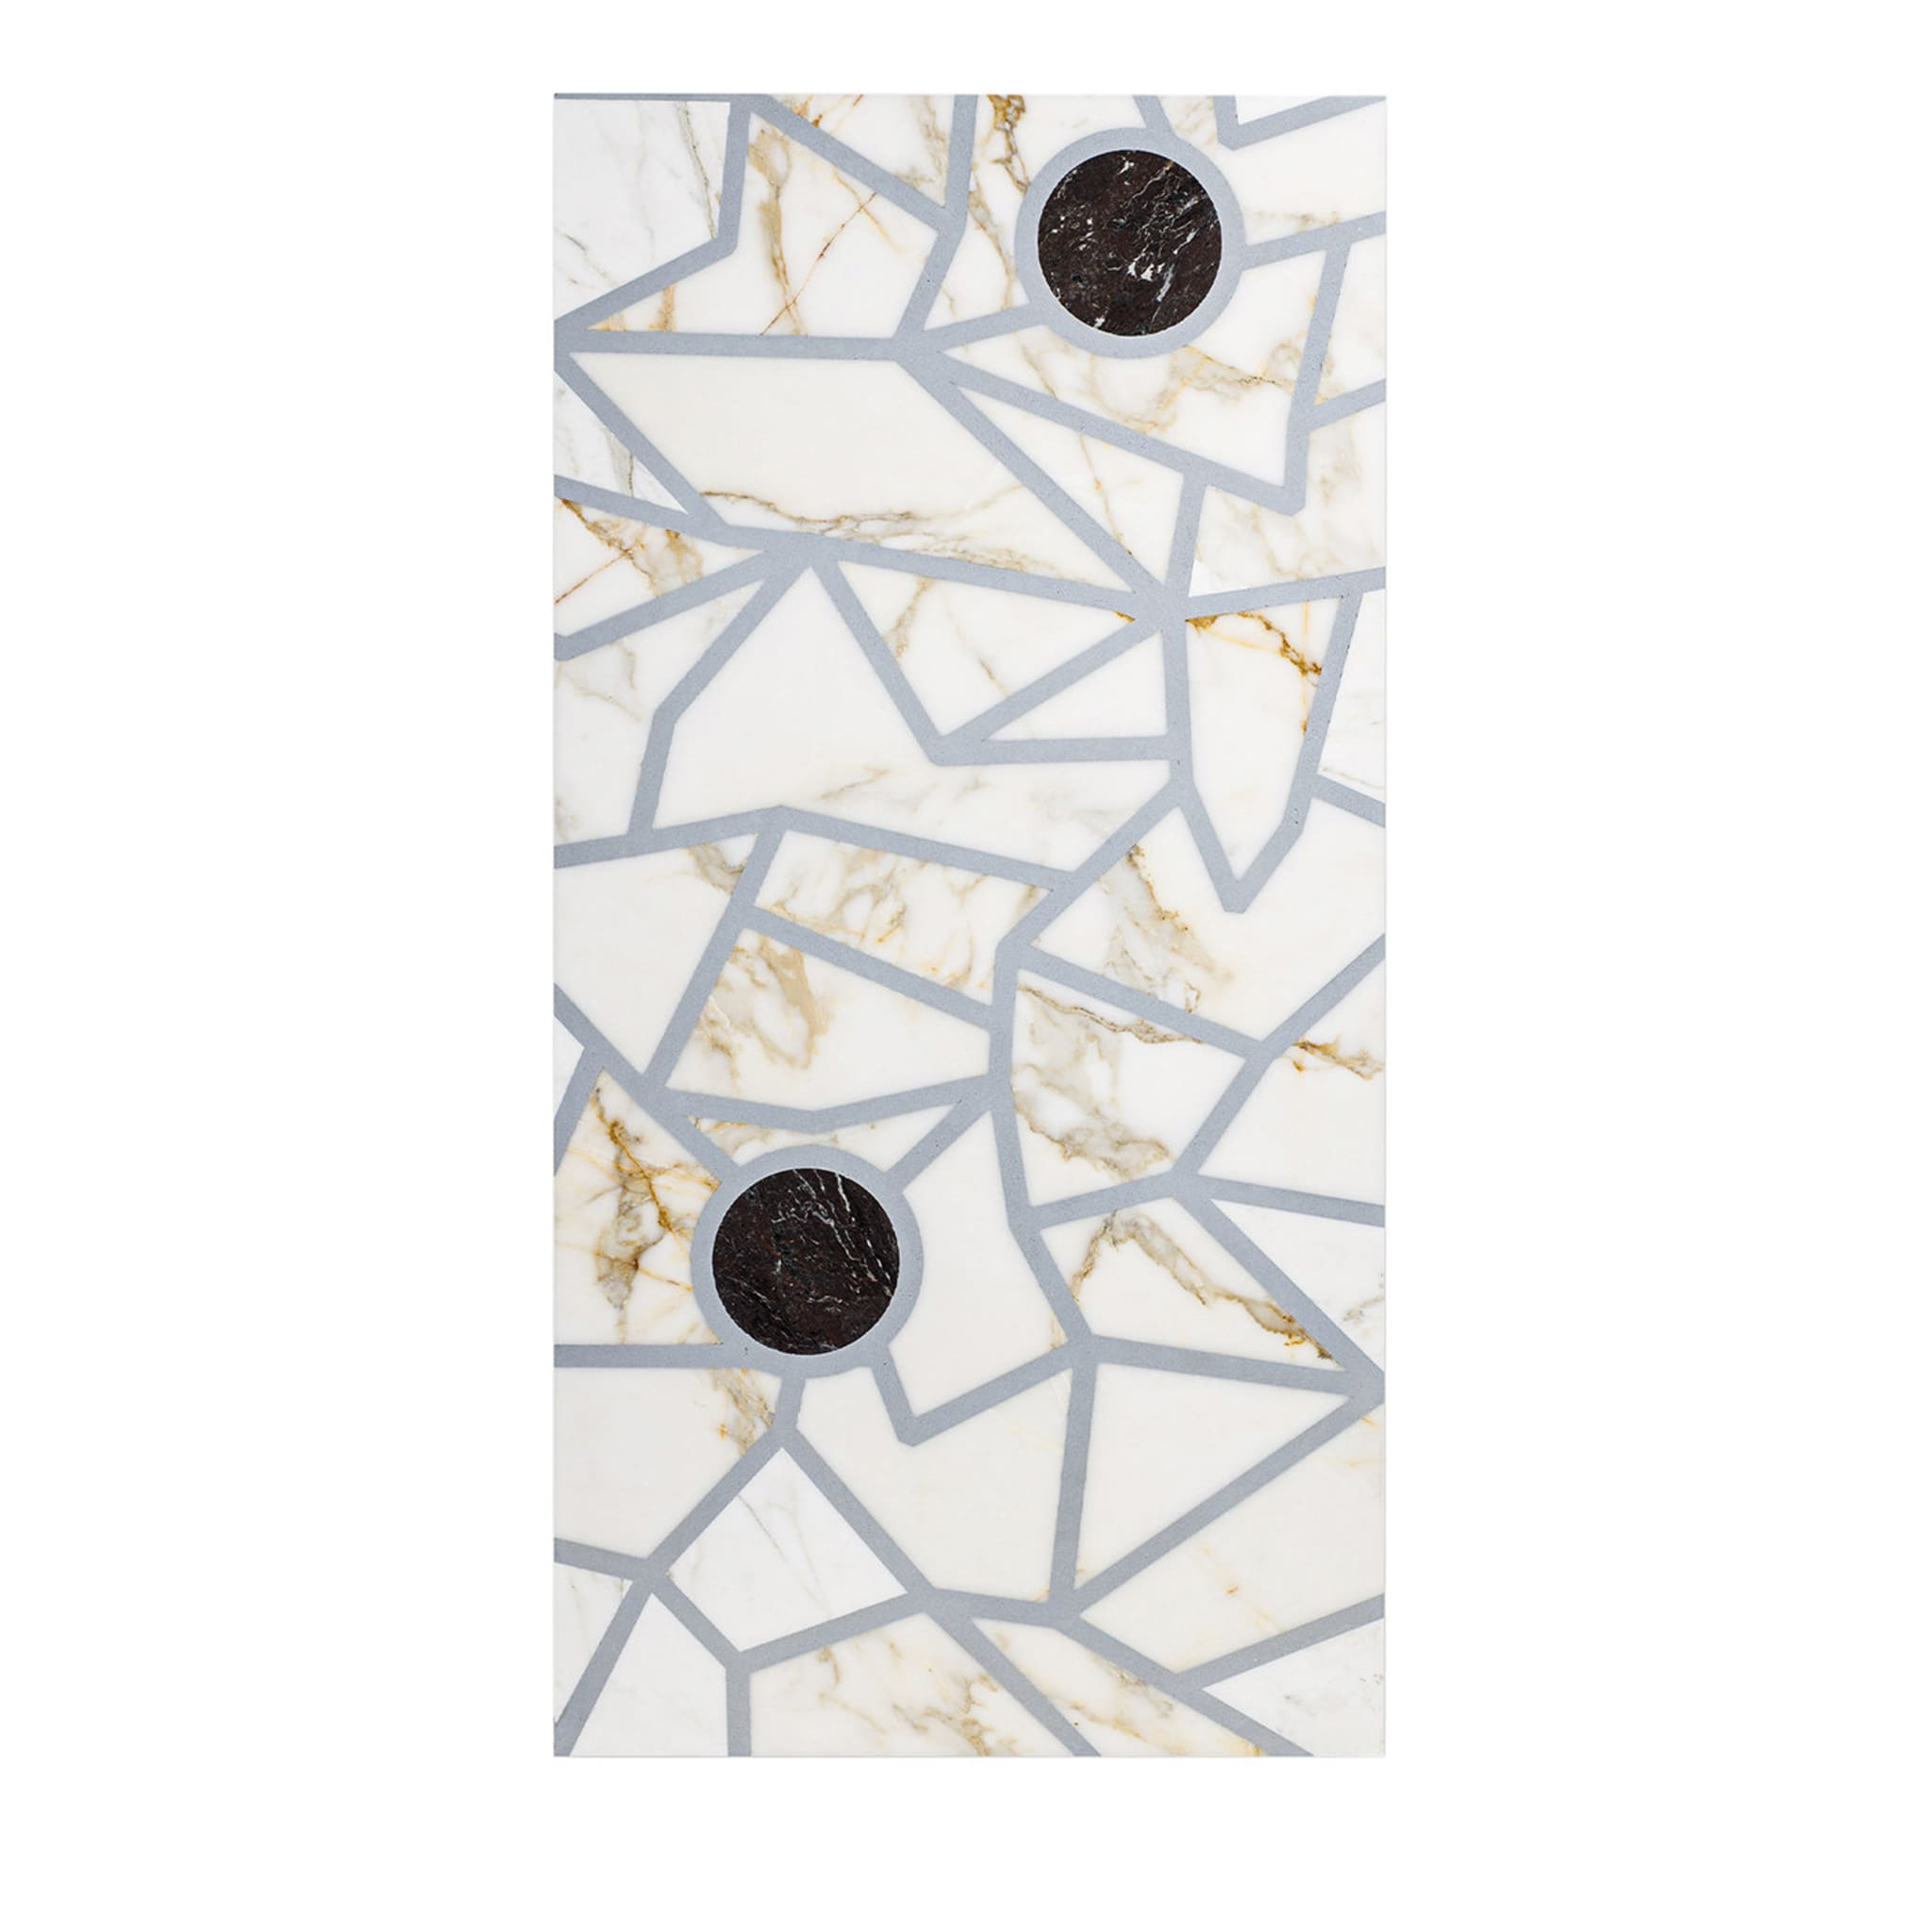 Opus Certum Dot Marble Panel by Giorgia Zanellato e Daniele Bortotto - Main view